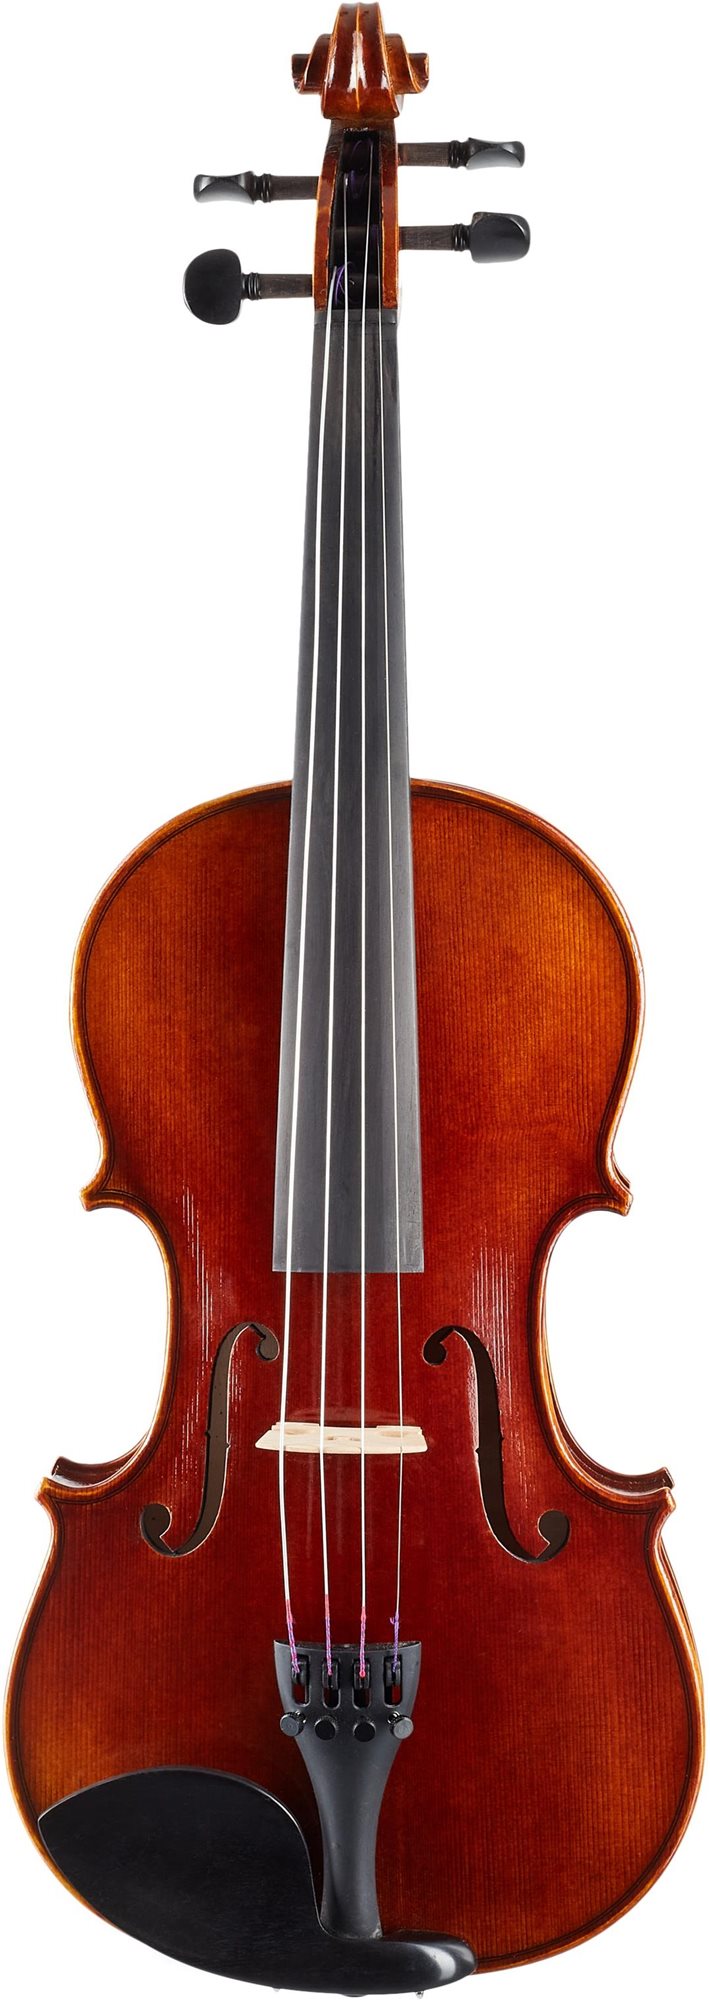 ARTLAND AV100 Advanced Violin 4/4